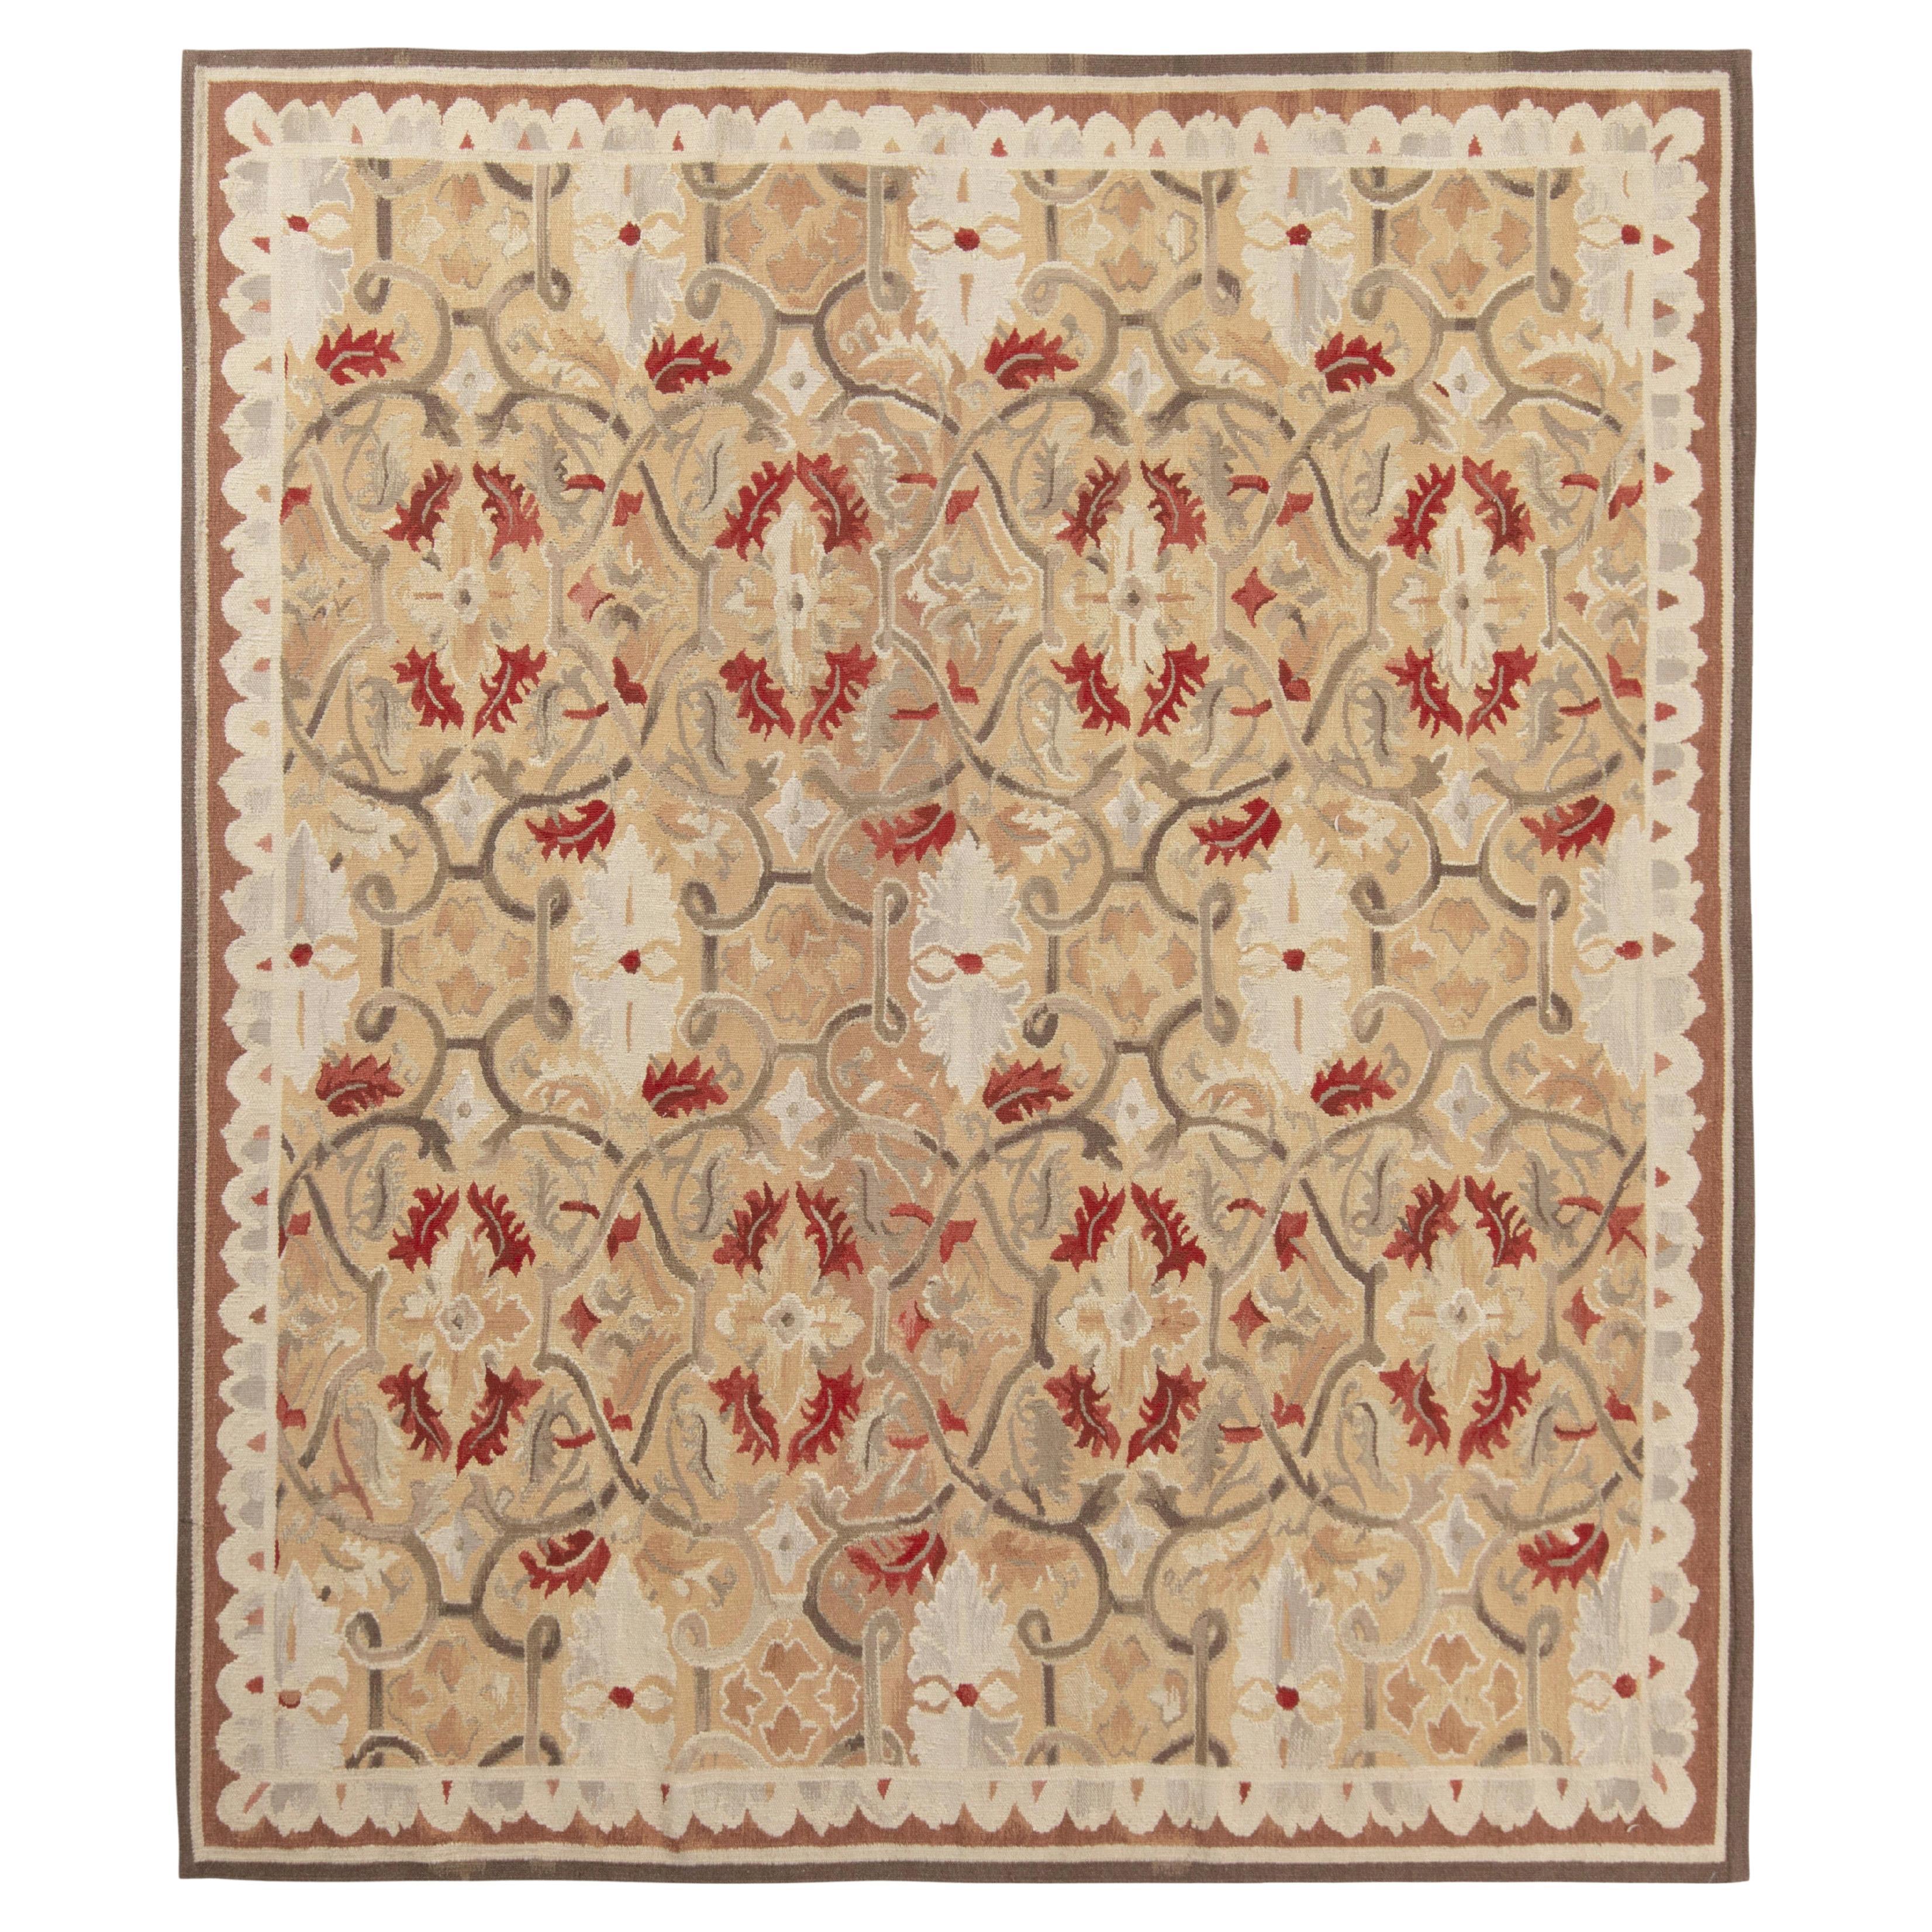 Tapis & Kilims Aubusson - Tapis à tissage plat de style Aubusson, motif floral beige, gris et rouge